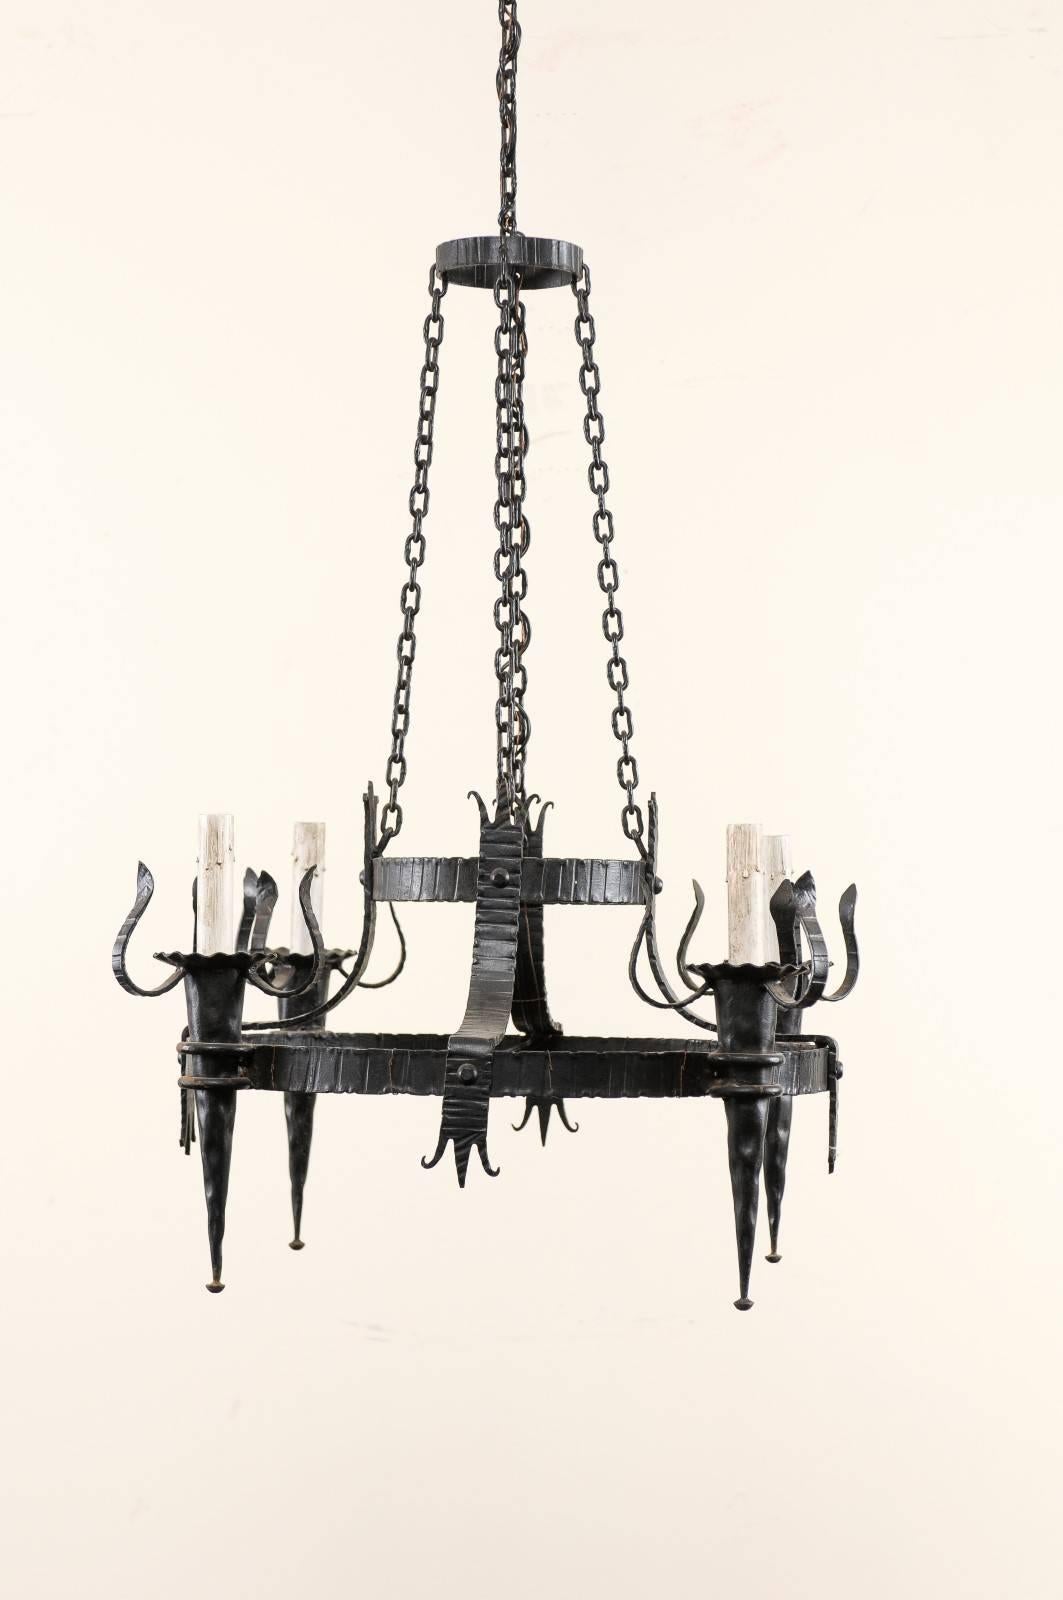 Ein französischer Vintage-Kronleuchter mit vier Lichtern aus schwarzem Eisen. Dieser französische Eisenkronleuchter aus der Mitte des 20. Jahrhunderts besteht aus einem größeren Ring mit vier fackelartigen Lichtern, die durch verzierte Eisenstreifen